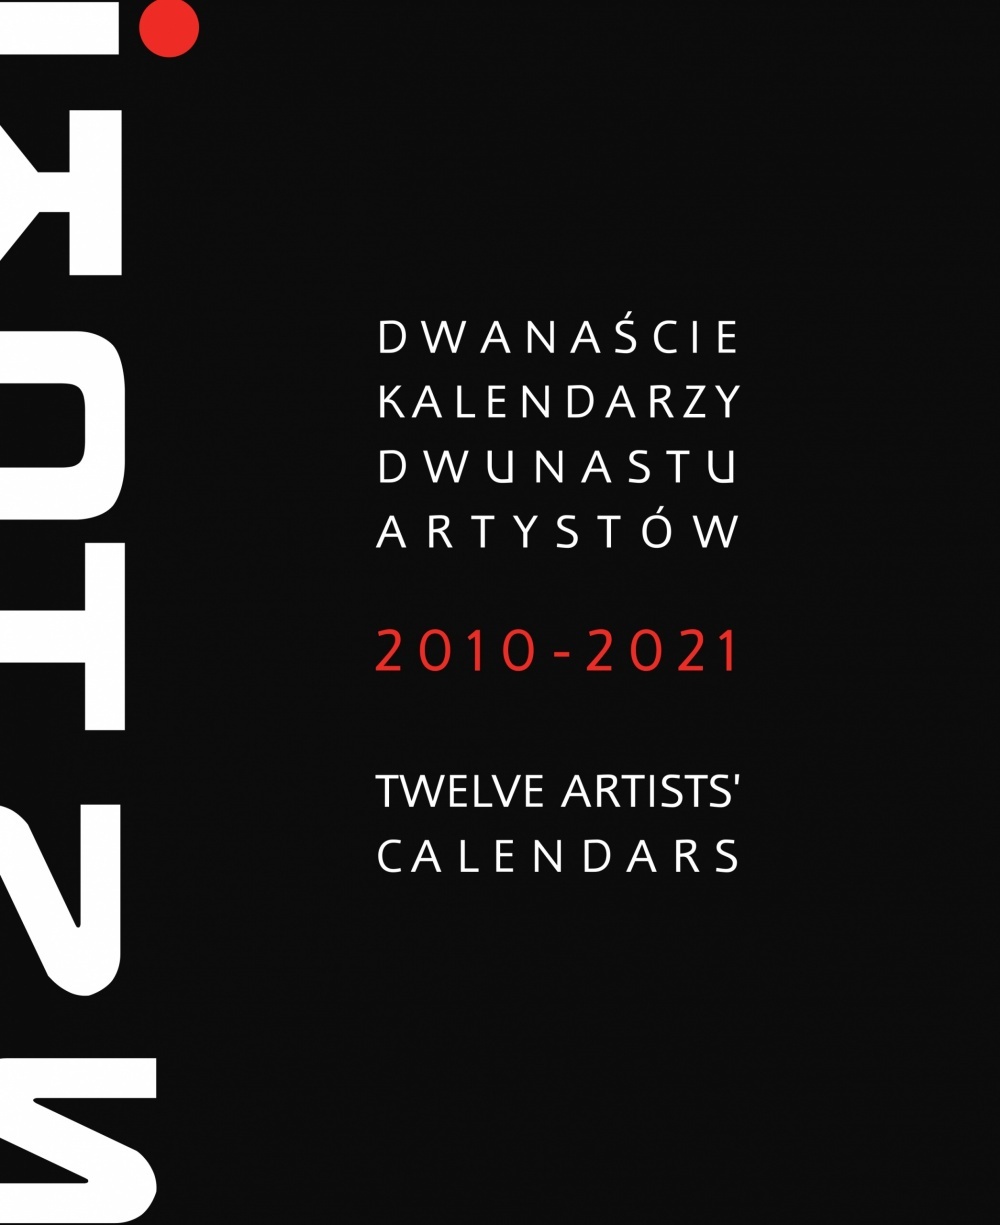 Dwanaście kalendarzy – dwunastu artystów 2010-2021